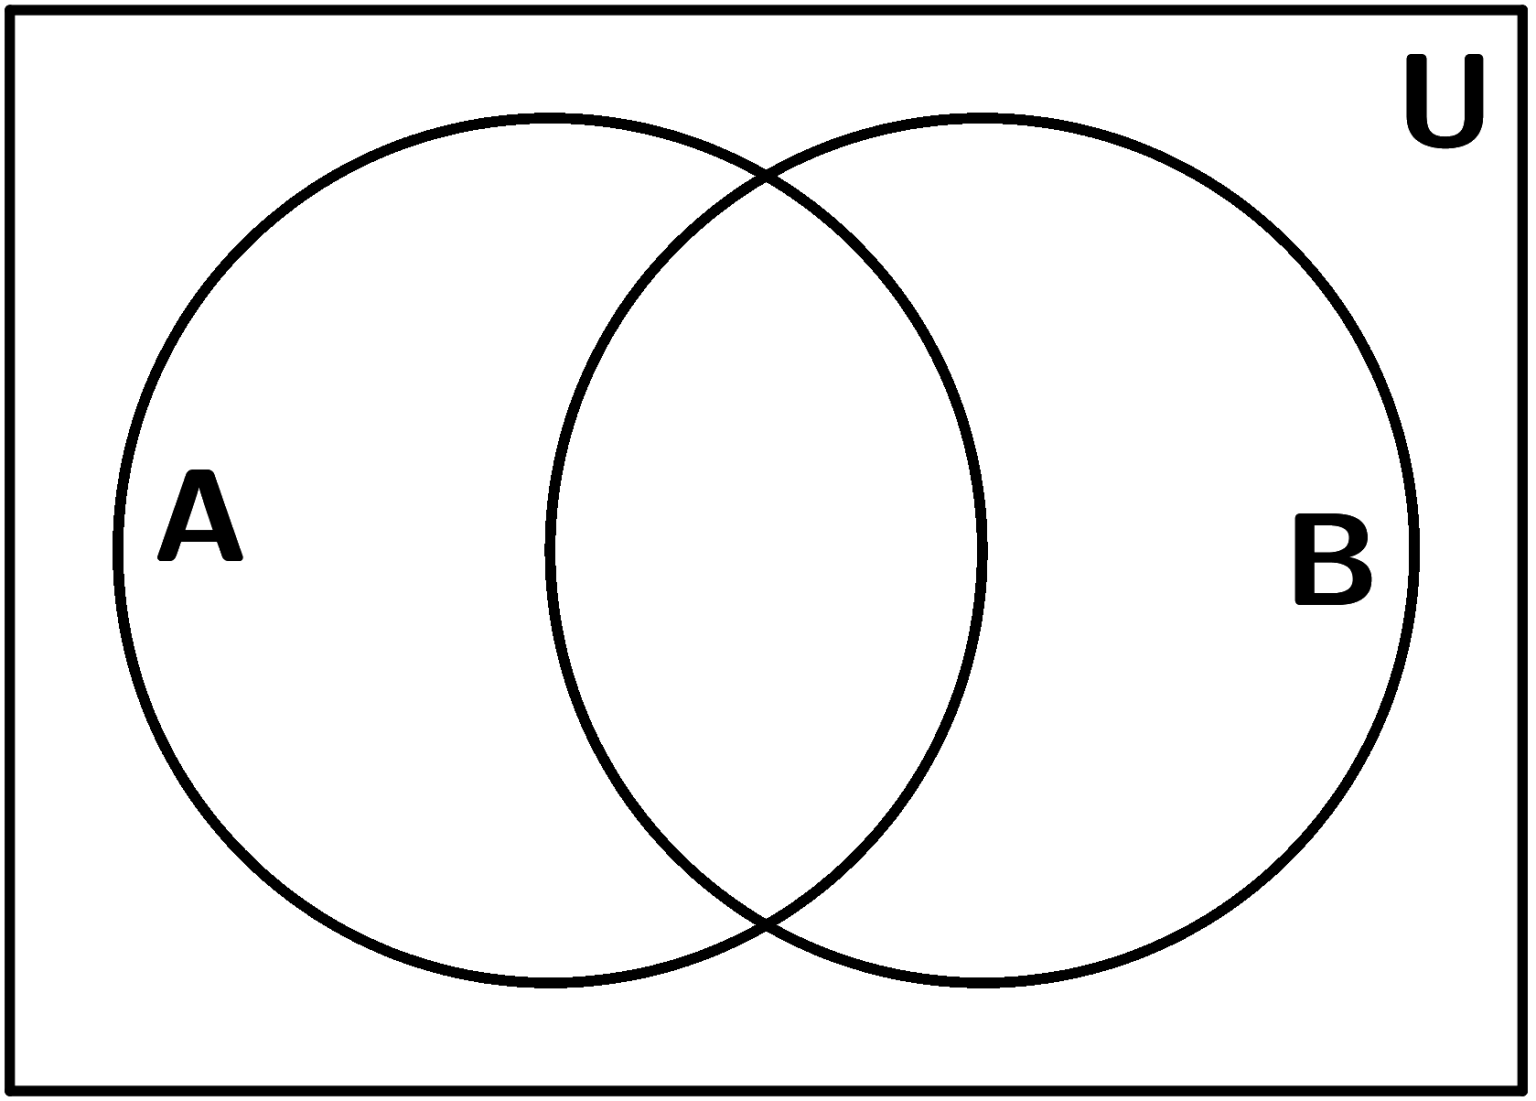 Diagramas De Venn Explica O E Exemplos